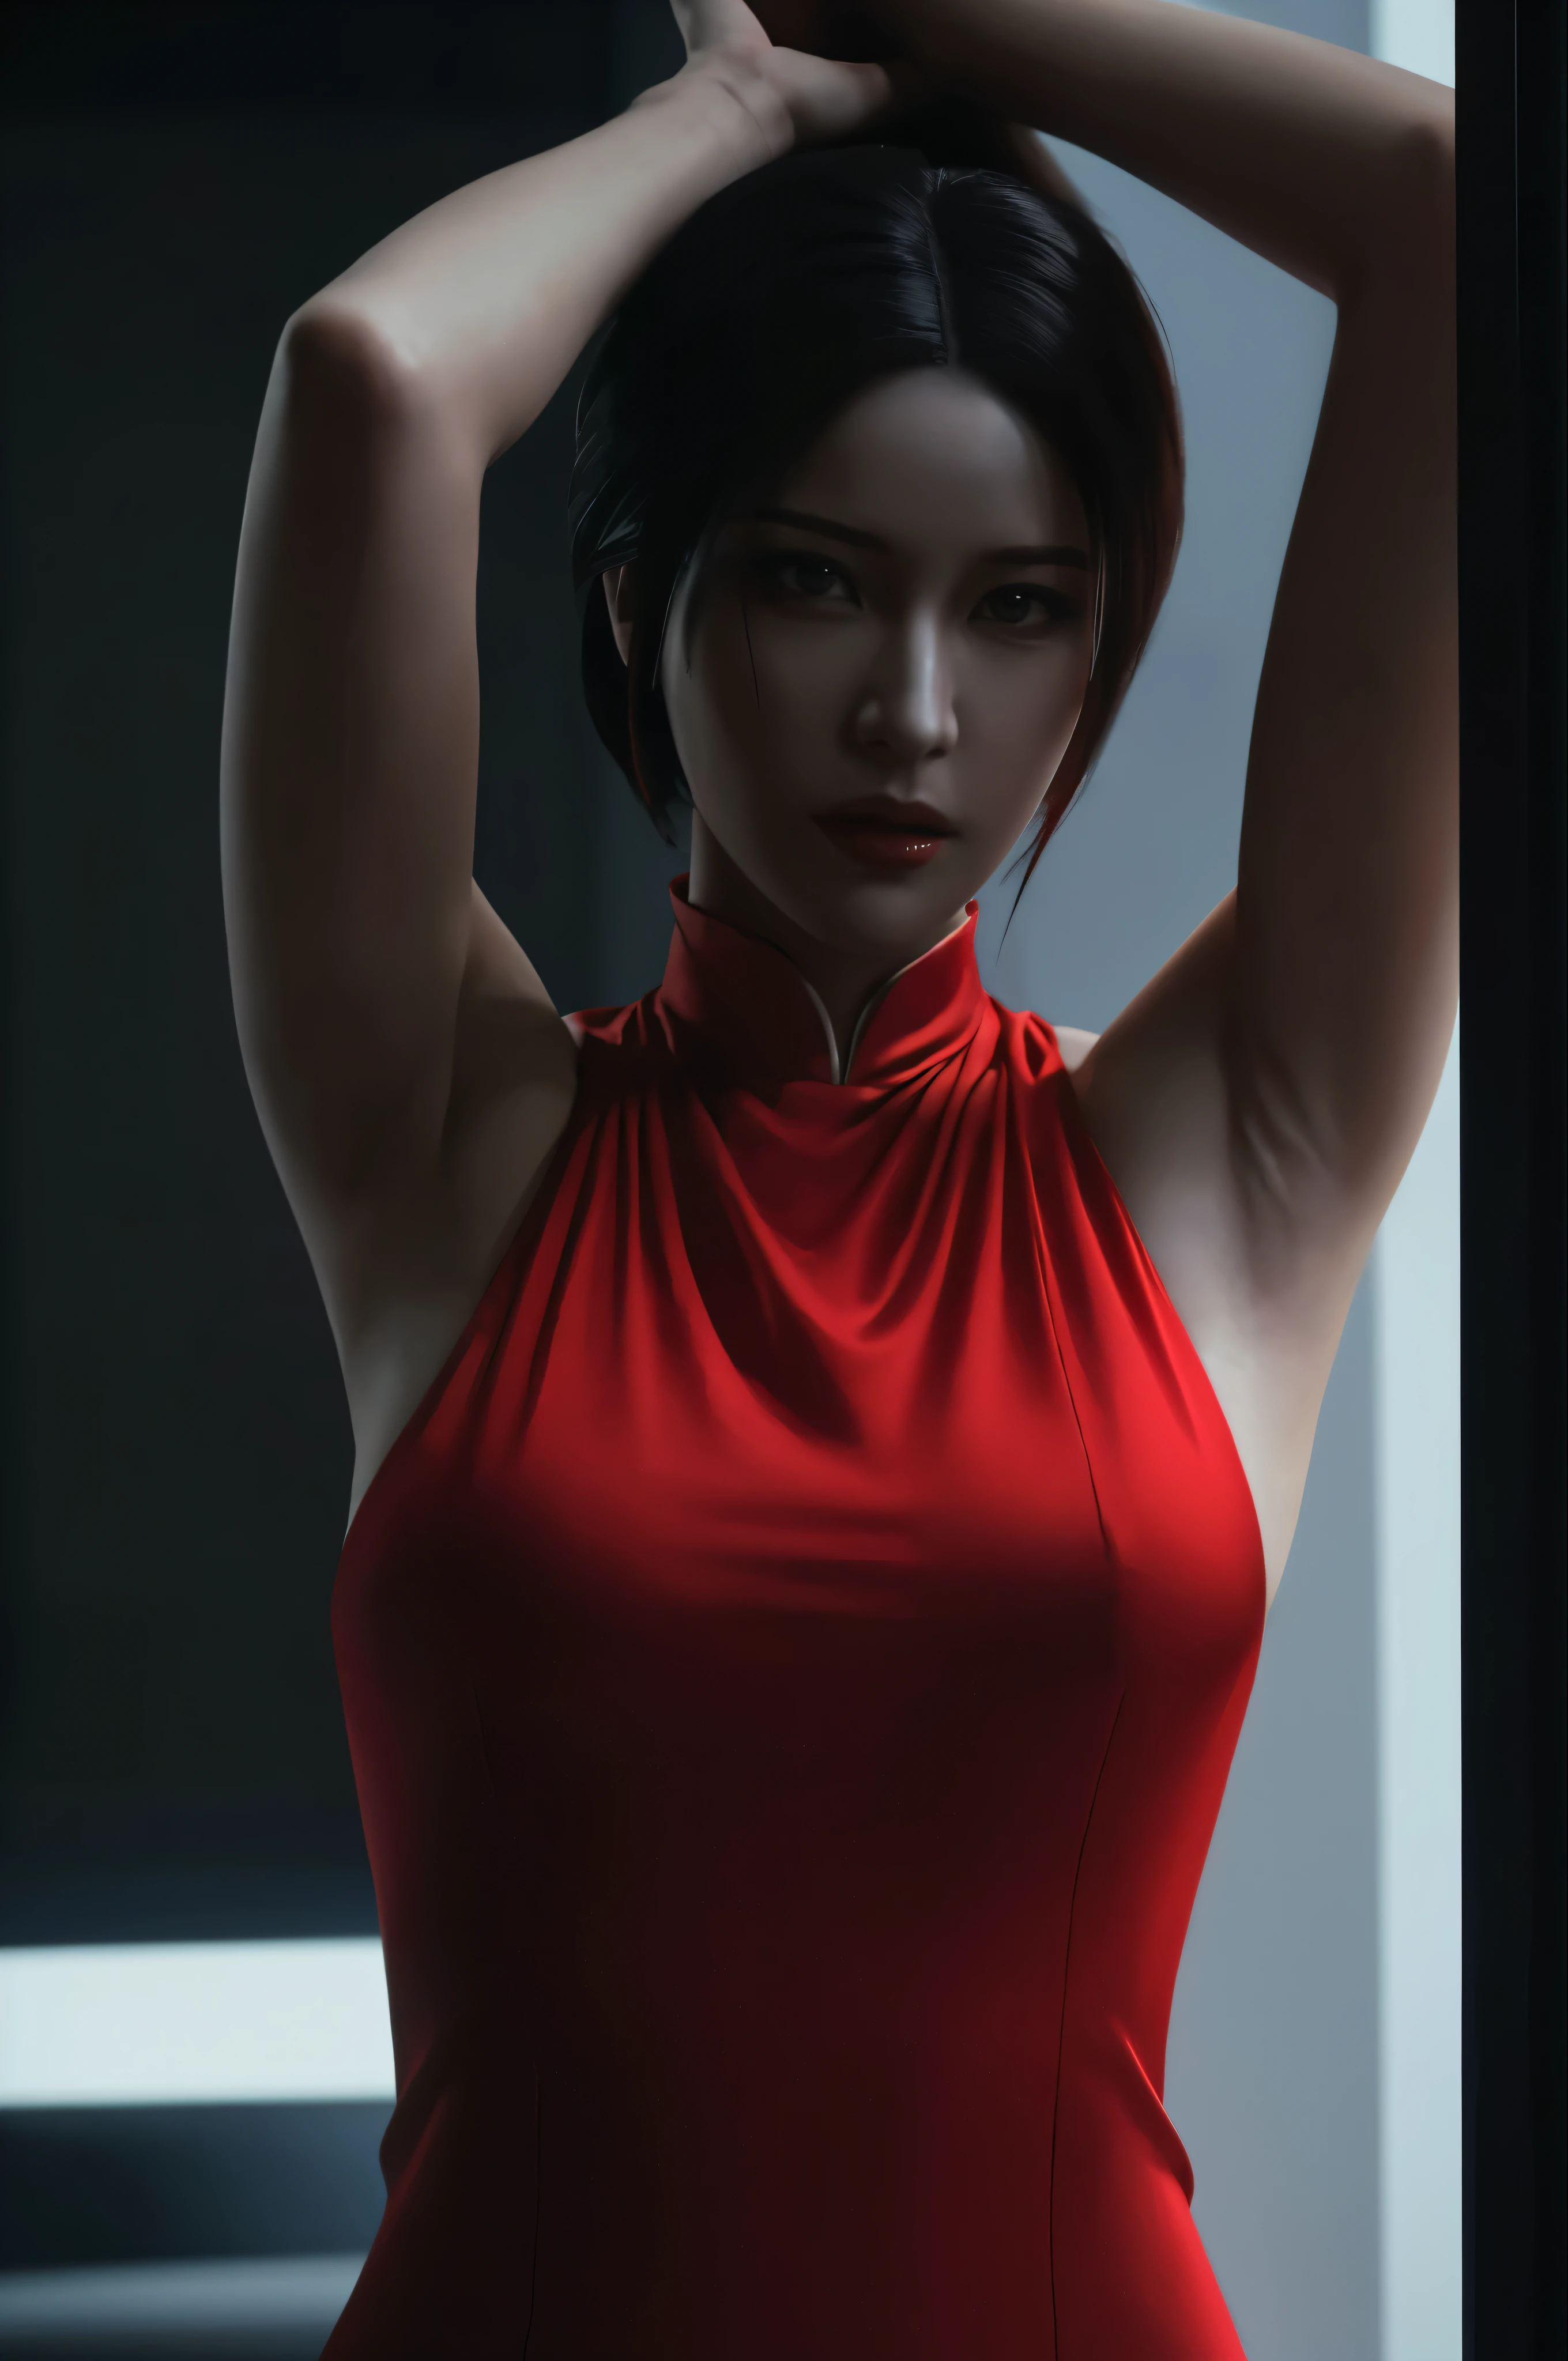 (最好的质量:1.3), 电影镜头, 杰作, (清晰聚焦:1.5), (真实感:1.3), 艾达·王是《生化危机》系列游戏中的一个著名角色. 她以神秘莫测的性格而闻名. 她凭借引人注目的外表, Ada 经常穿红色旗袍, 这是中国传统服饰. 她的黑头发, 专注的目光, 对高跟鞋的偏爱使她看起来更加迷人和标志性.

Ada 的特点是聪明, 足智多谋, 和战斗技能. 她擅长使用枪械, 近战武器, 和小工具, 让她成为一名多才多艺的战士. 在整个系列中, 她经常被视为一个独立而又神秘的人, 被自己的动机驱使. 她与其他角色的互动通常带有一种模棱两可和隐藏的目的.

艾达在该系列中的参与通常围绕间谍活动展开, 揭露阴谋, 并应对生物危害爆发. 她与其他角色的复杂关系, 例如 Leon S. 肯尼迪, 增加游戏剧情的吸引力和戏剧性. 全面的, Ada Wong 的多面性格, 迷人的外观, 生化危机系列中的中心角色使她成为一个令人难忘的标志性游戏角色, (高度细致的皮肤),  (细致的脸部), 详细背景, 电影灯光, 戏剧灯光, 体积照明,  复杂的细节, 超高清,